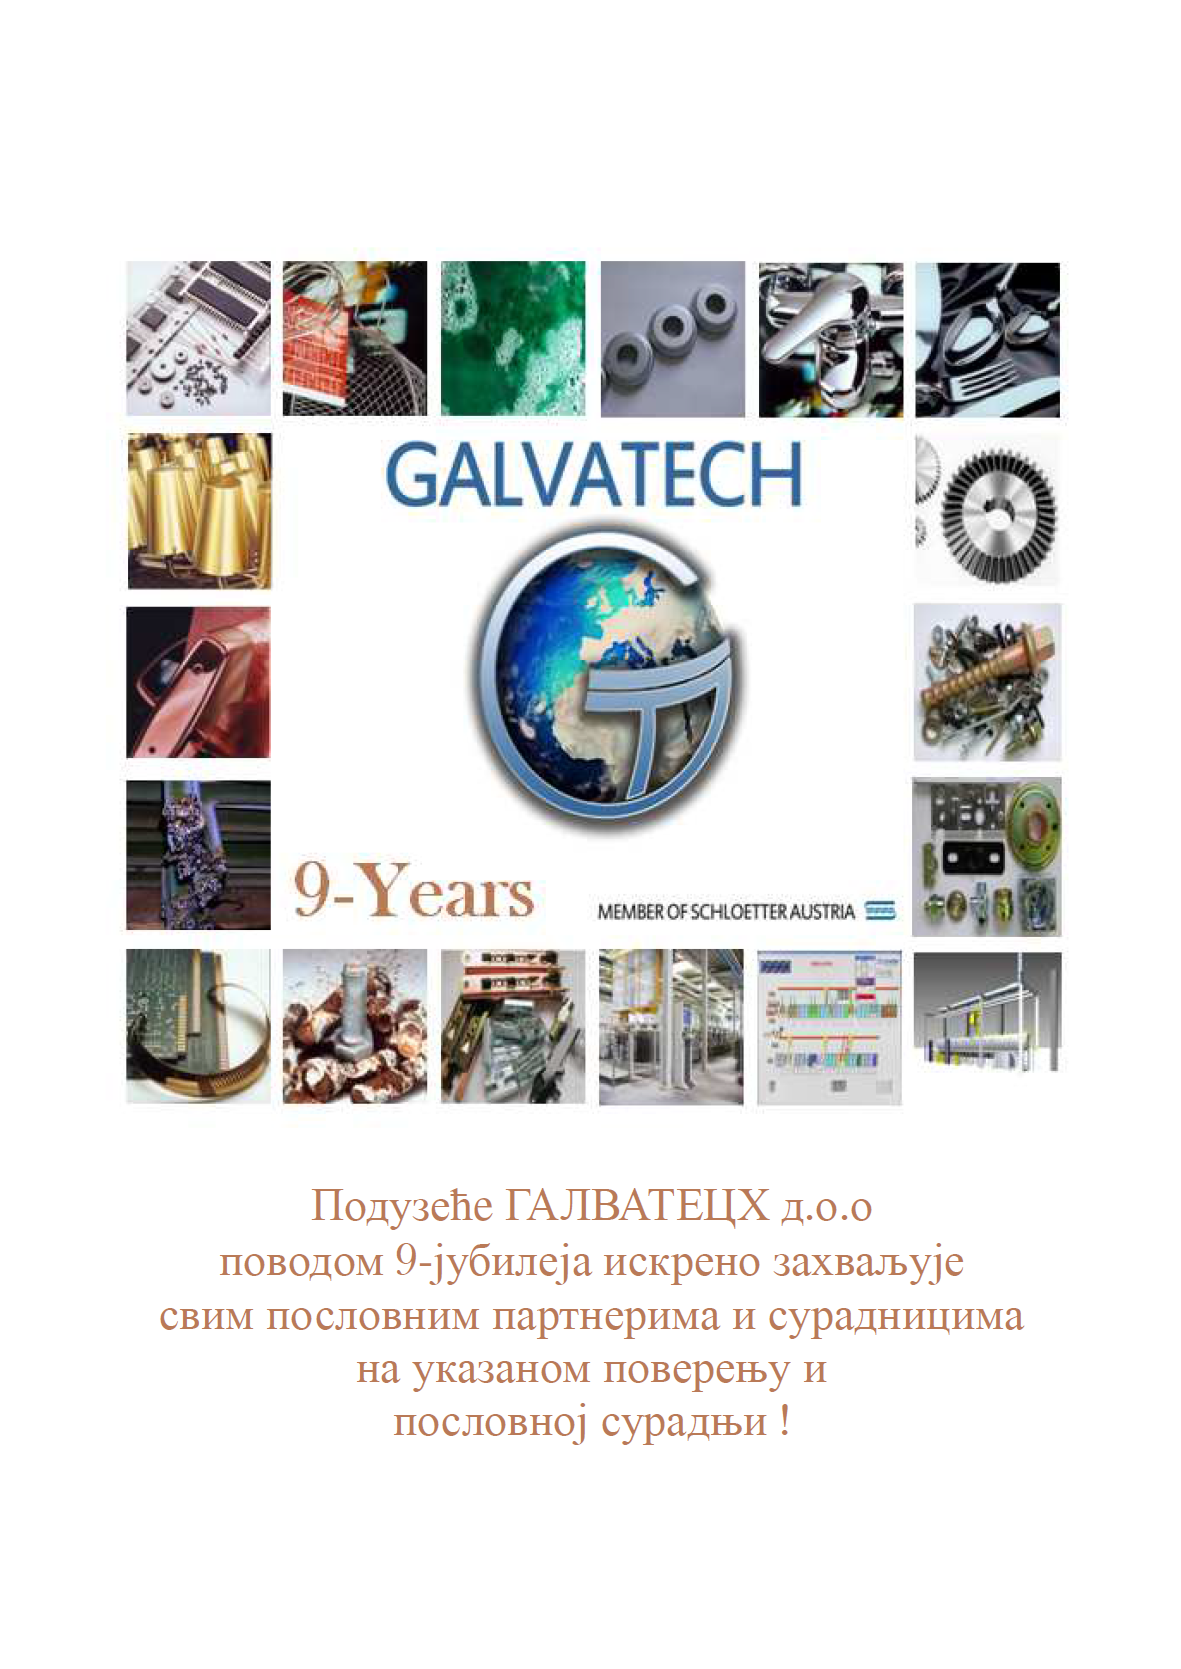 D_GALVATECH_2020-03-15_9-Jubiläum-Serbisch